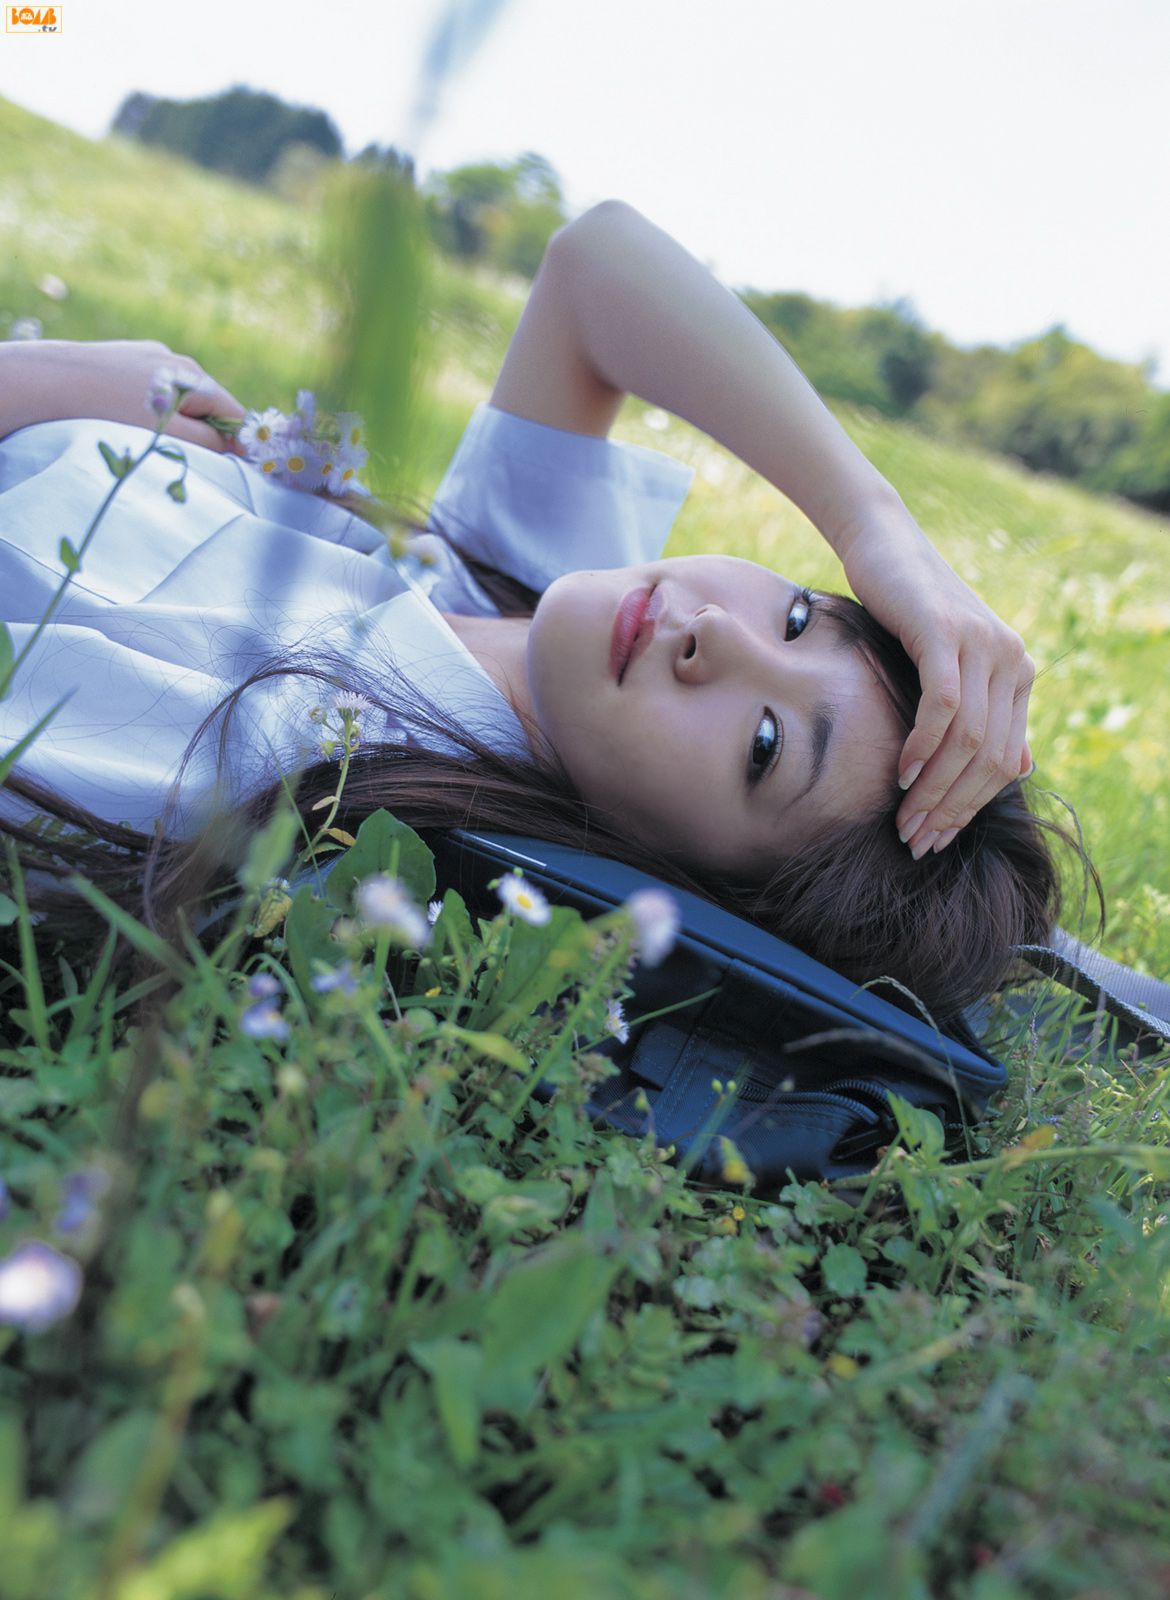 Asian Women Japanese Women Actress Yui Aragaki Field 1170x1600